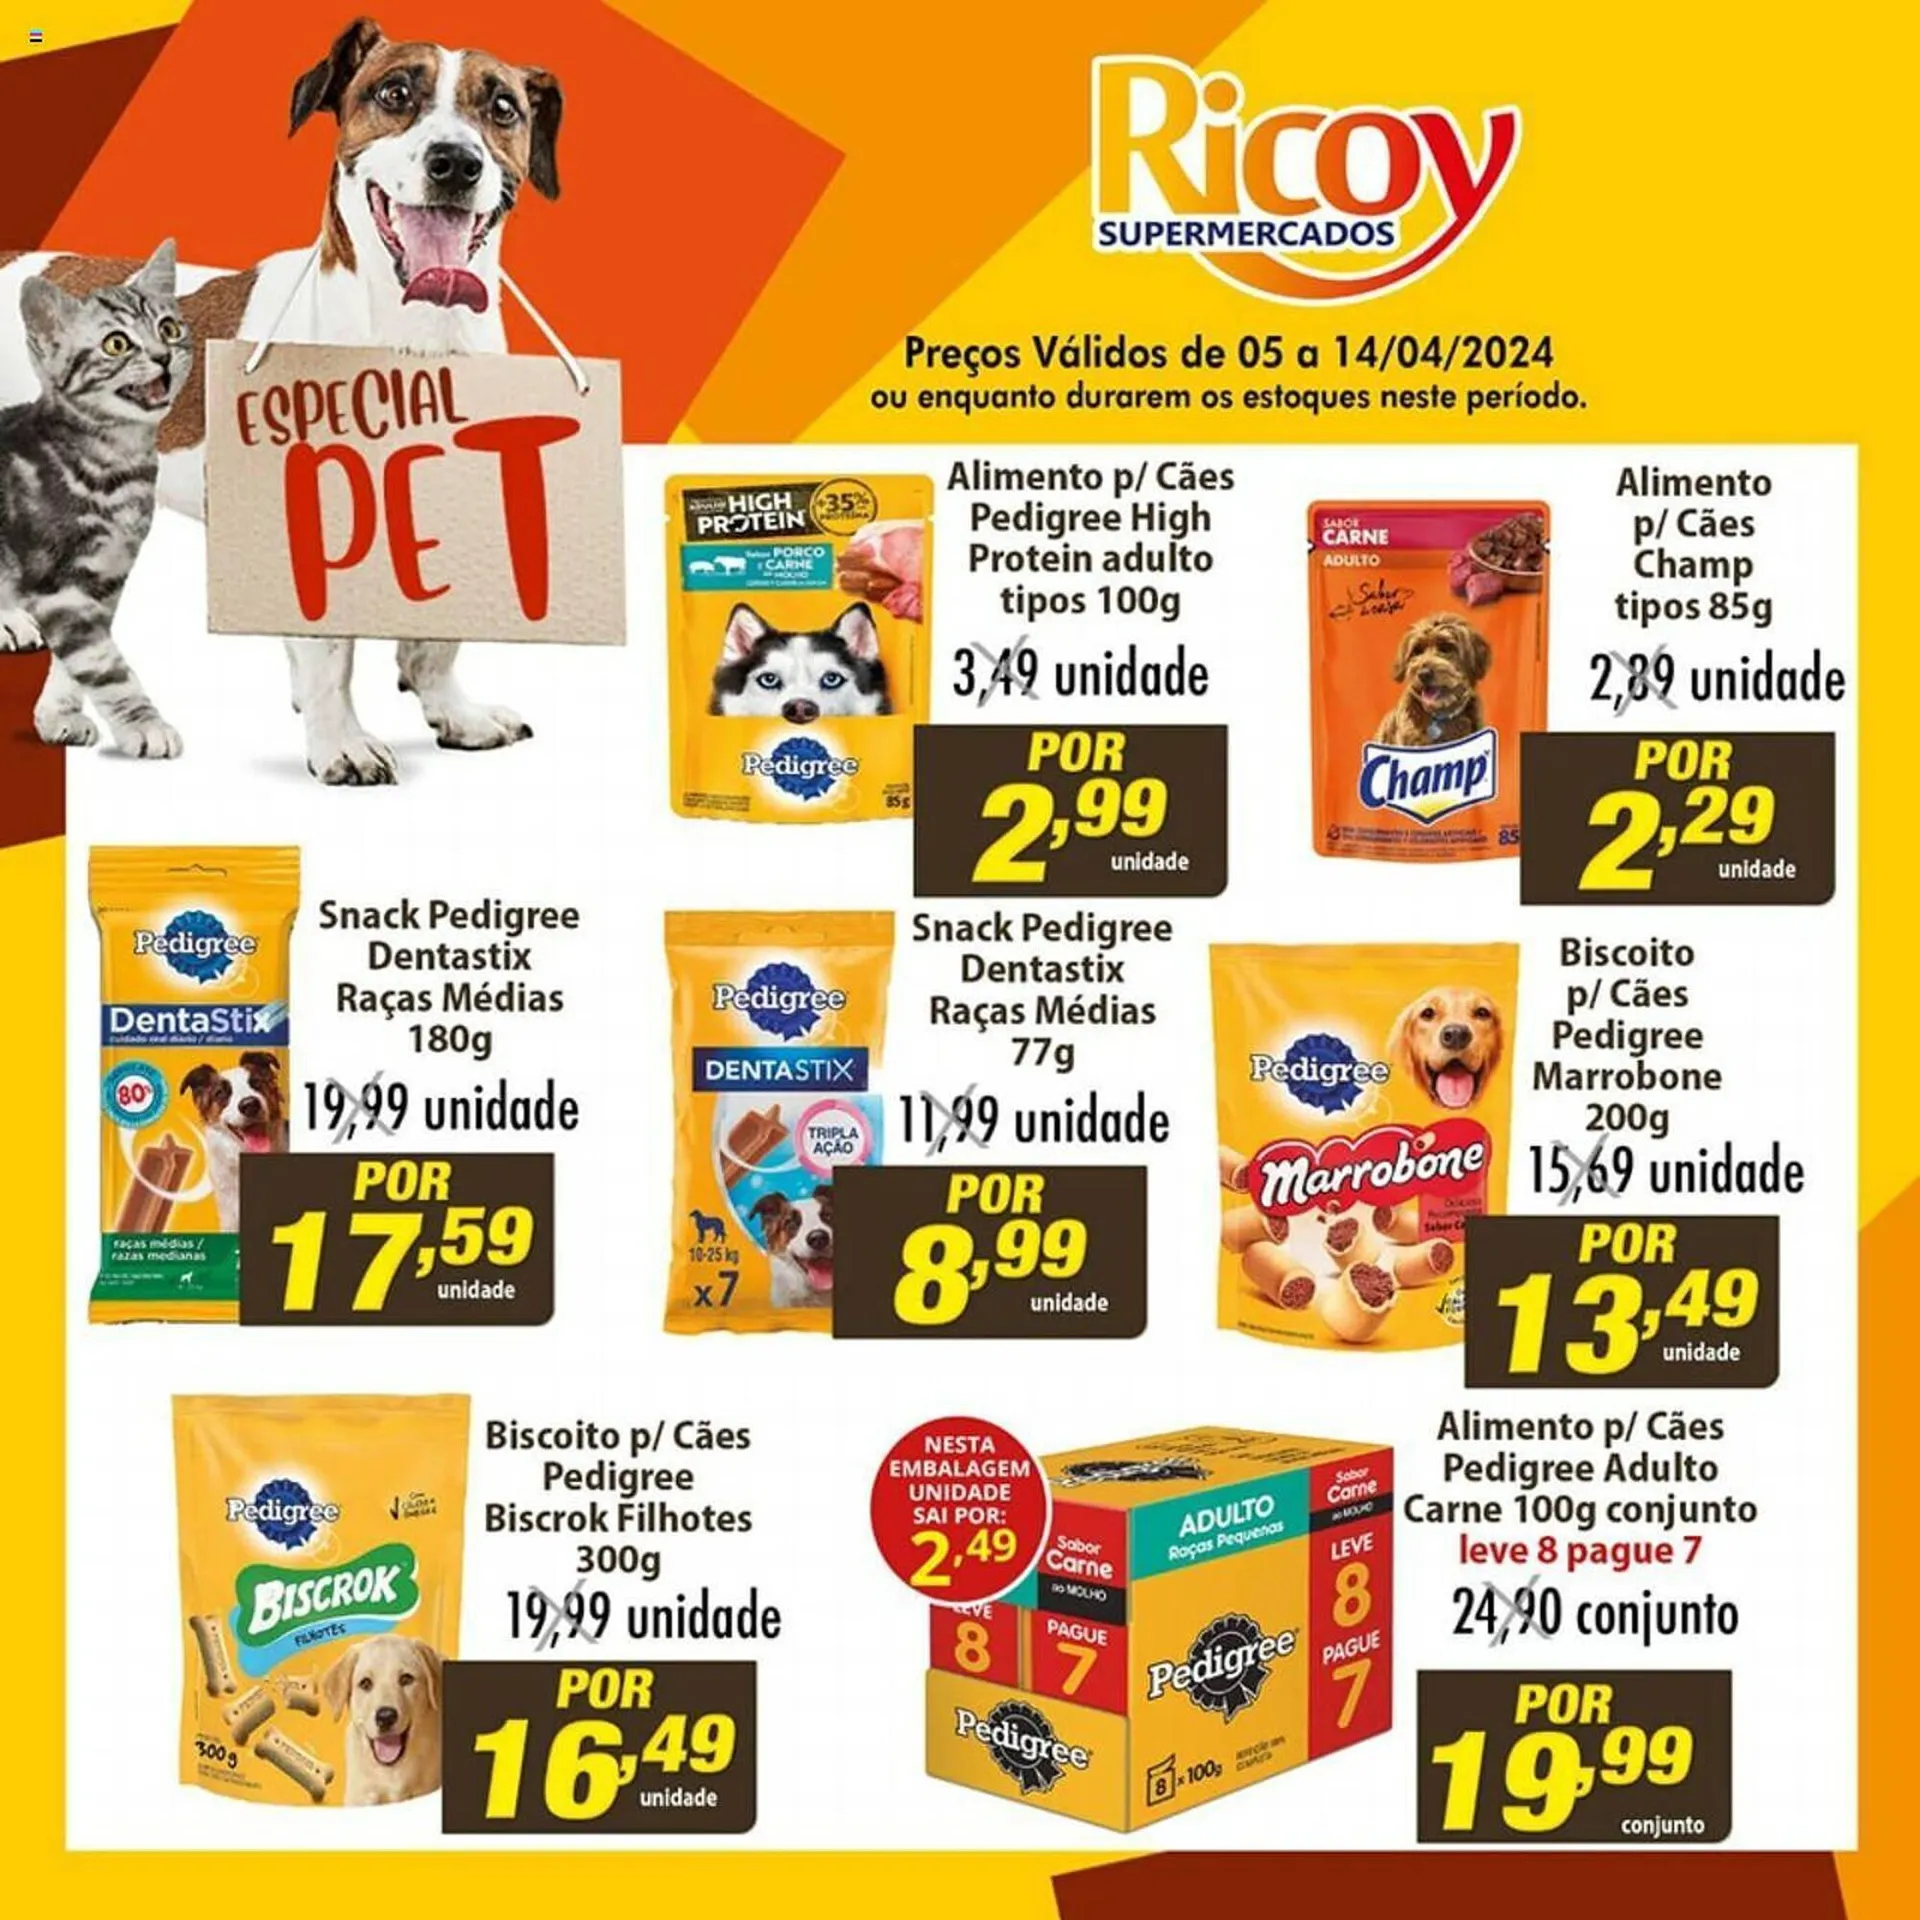 Encarte de Catálogo Ricoy Supermercados 5 de abril até 14 de abril 2024 - Pagina 